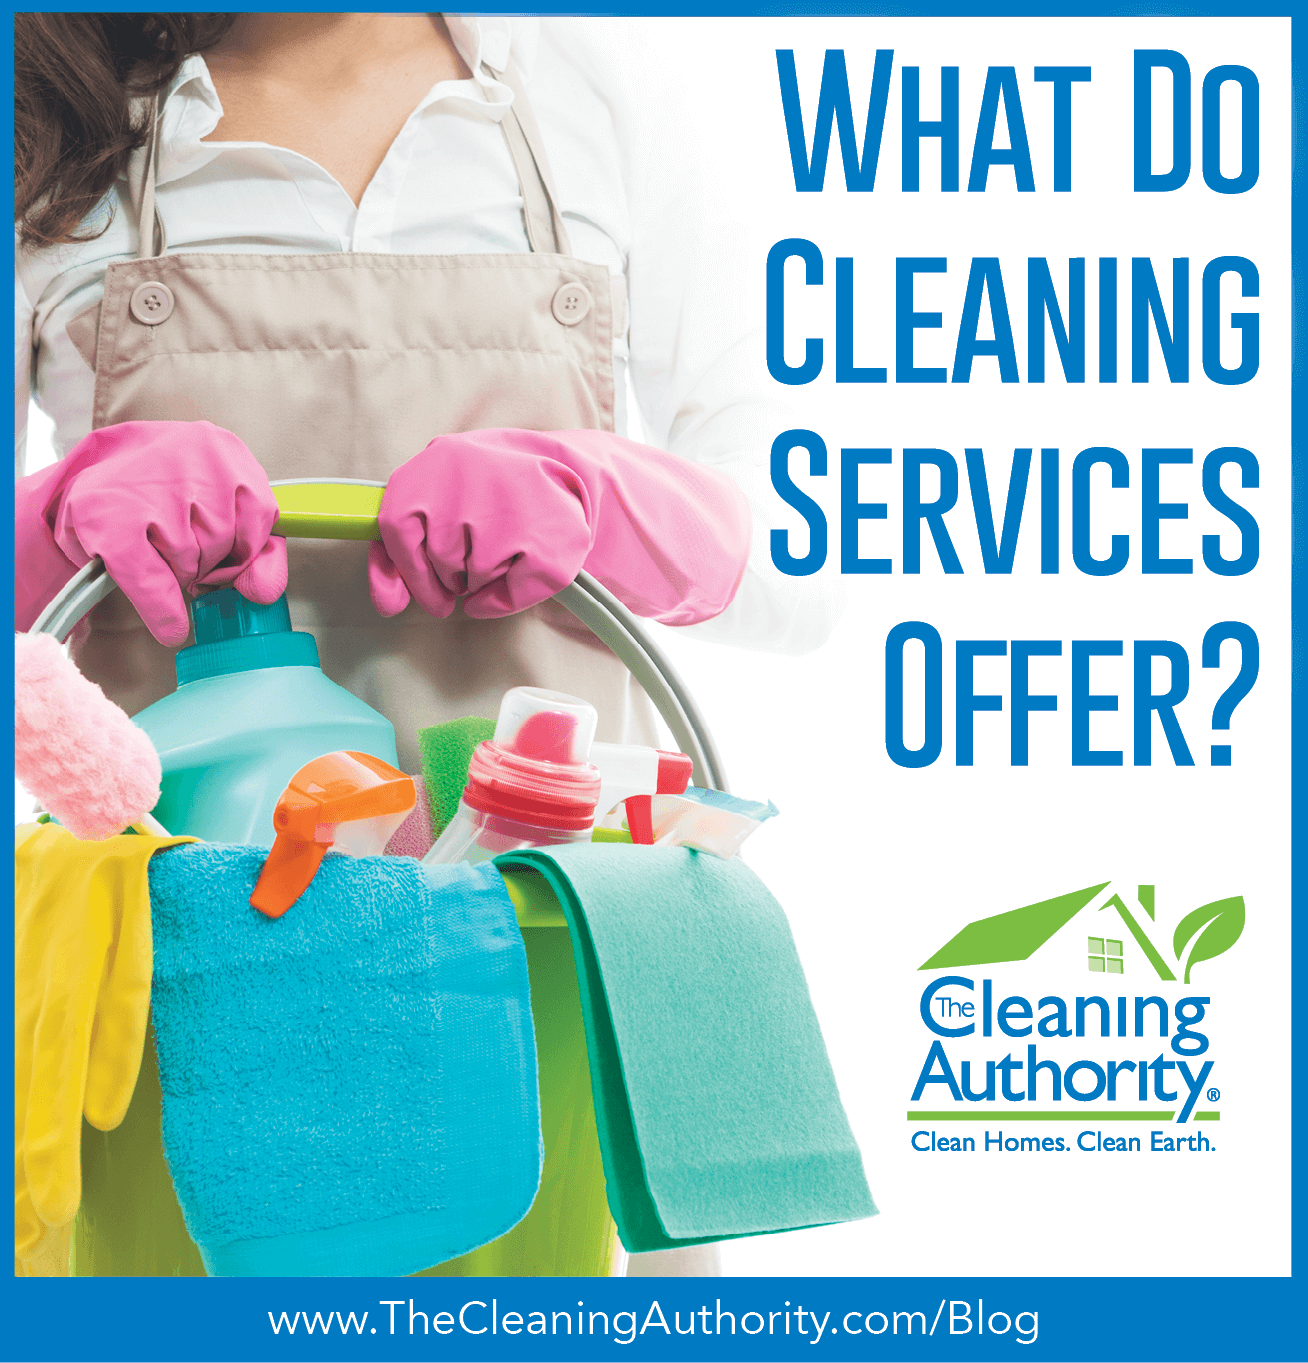 GET IT DONE CLEANING SERVICES LLC - Phoenix, AZ